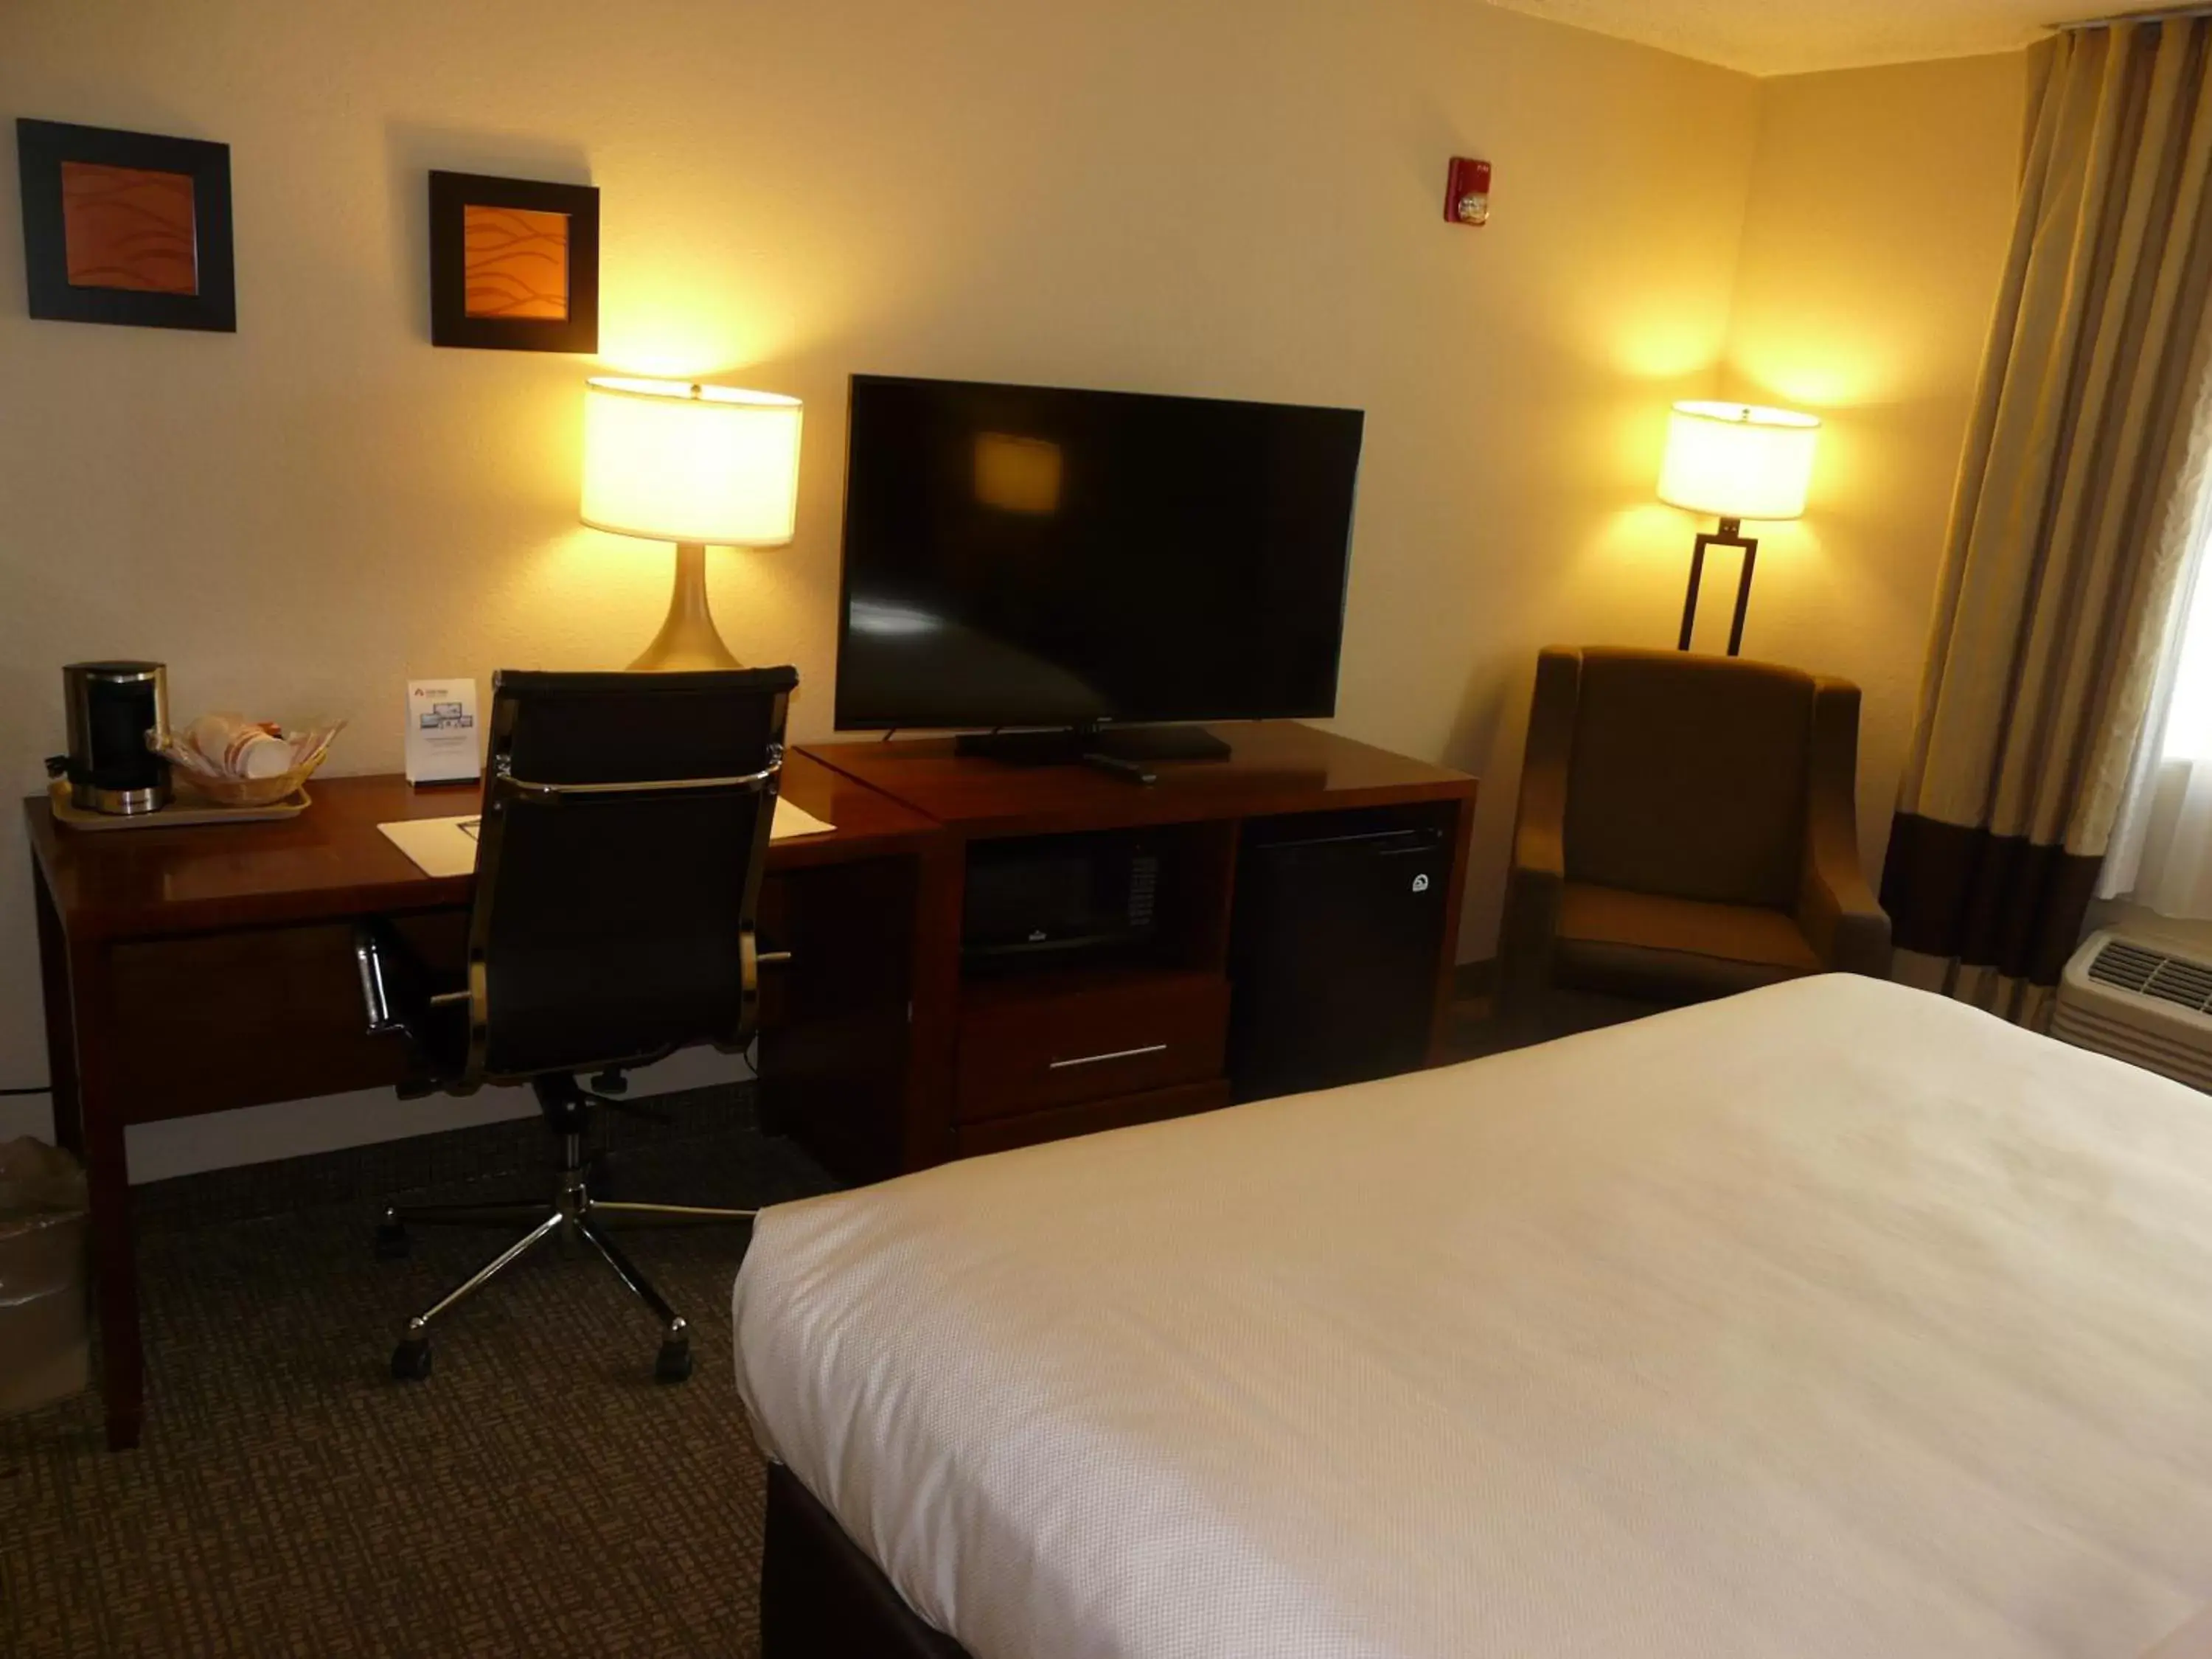 Bedroom, TV/Entertainment Center in Comfort Inn Fort Myers Northeast